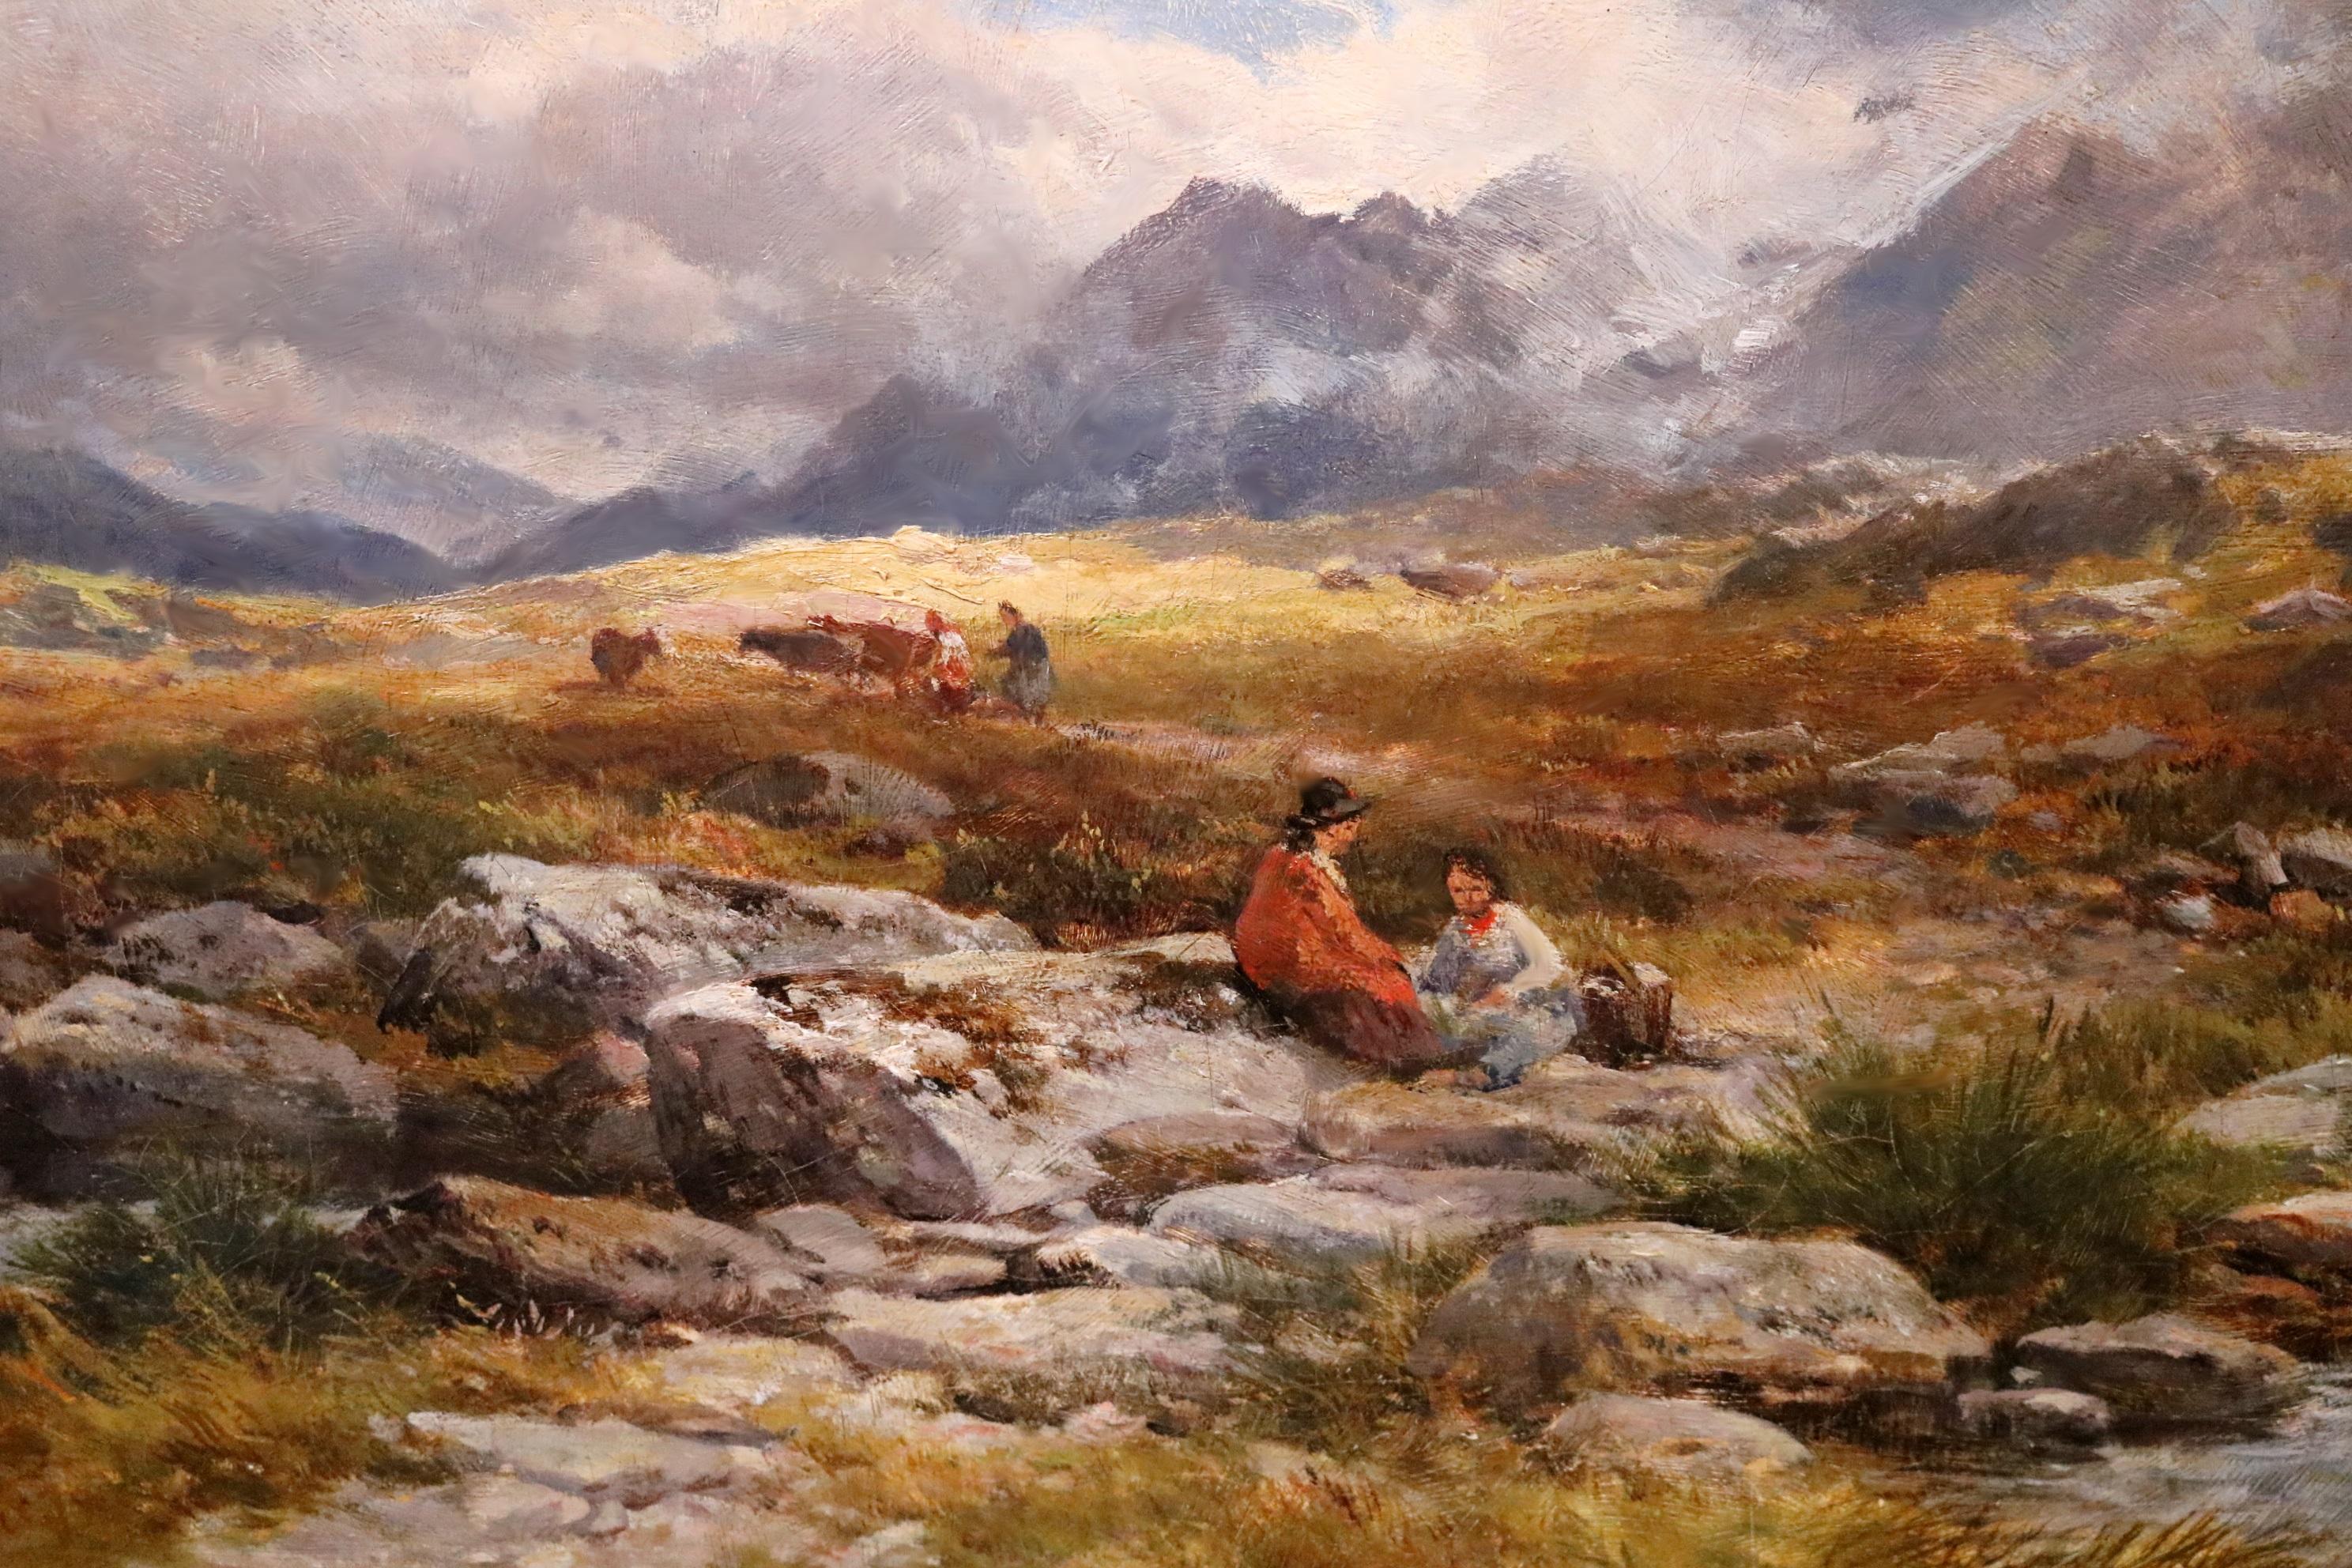 Avant Glyder Fawr - Grande peinture à l'huile de paysage de montagne galloise du 19e siècle  - Victorien Painting par John Syer